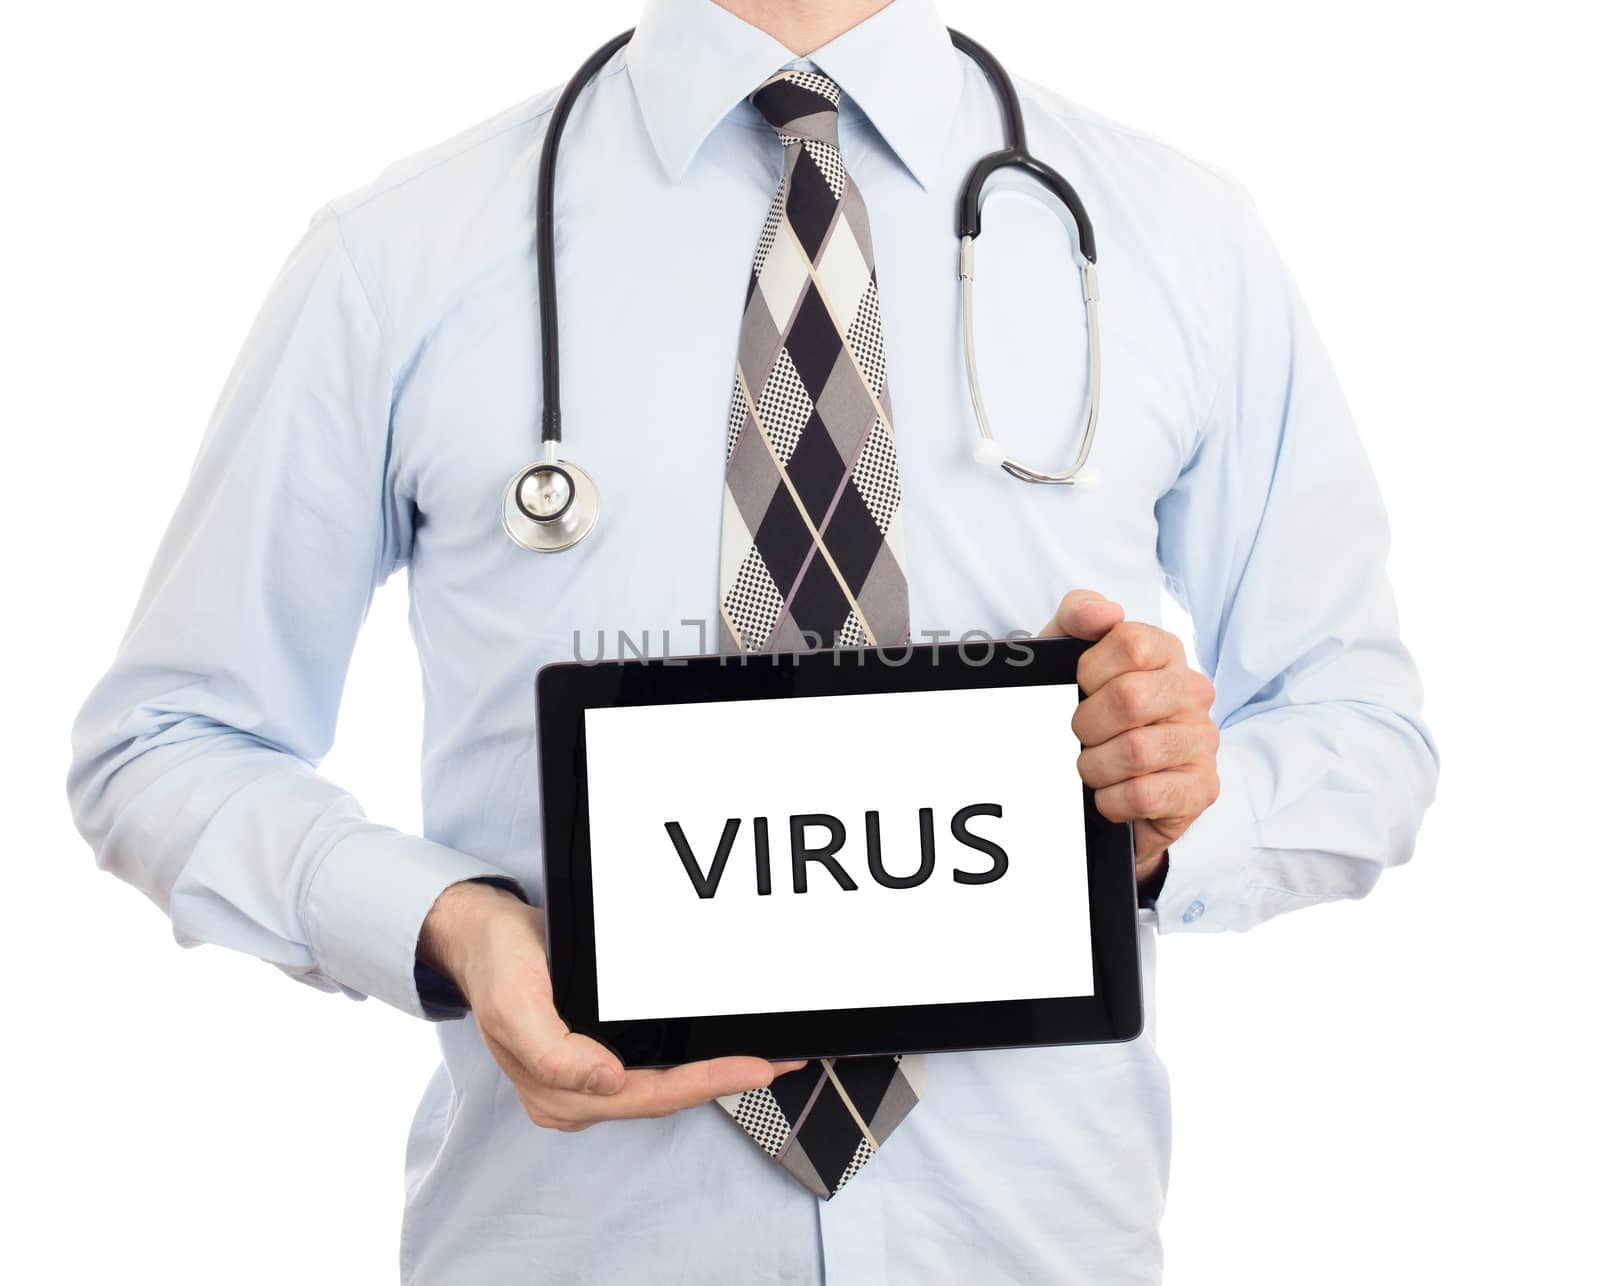 Doctor, isolated on white backgroun,  holding digital tablet - Virus